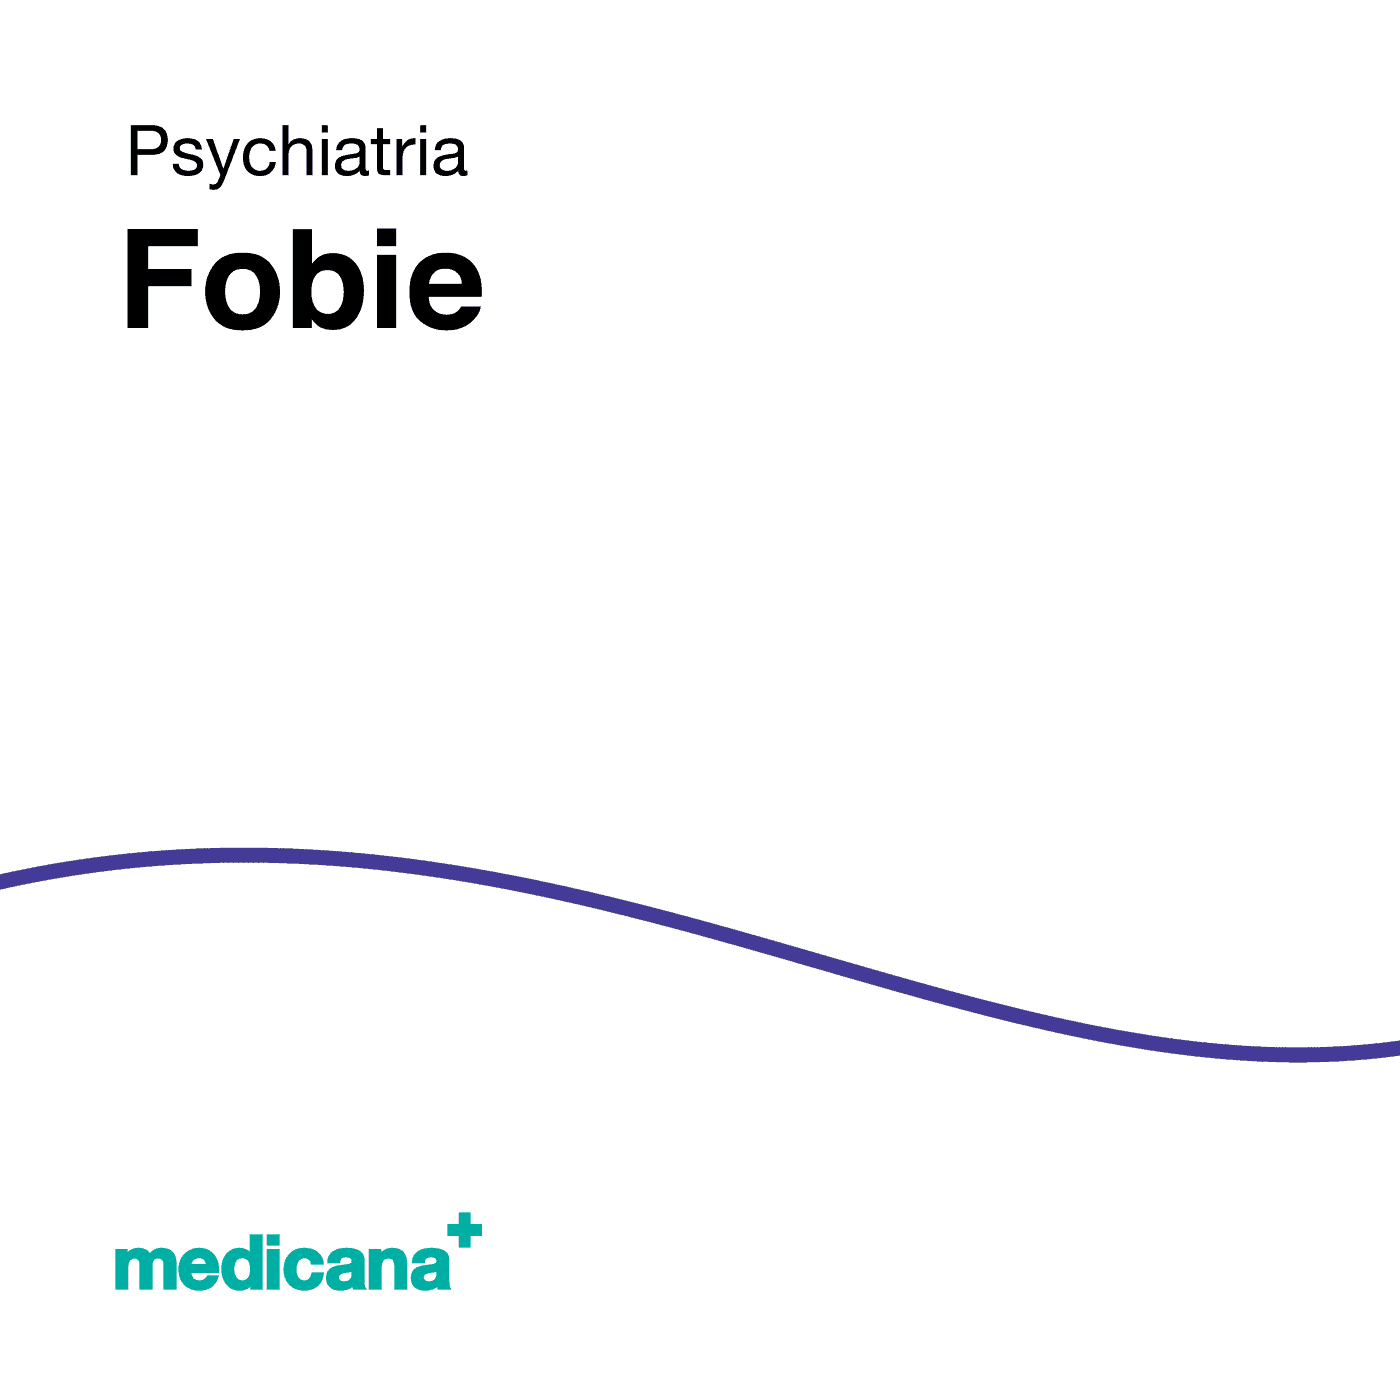 Grafika, białe tło z granatową kreską, czarnym napisem Psychiatria - Fobie i logo Medicana Centrum Terapii Medyczna Marihuana w lewym dolnym rogu.